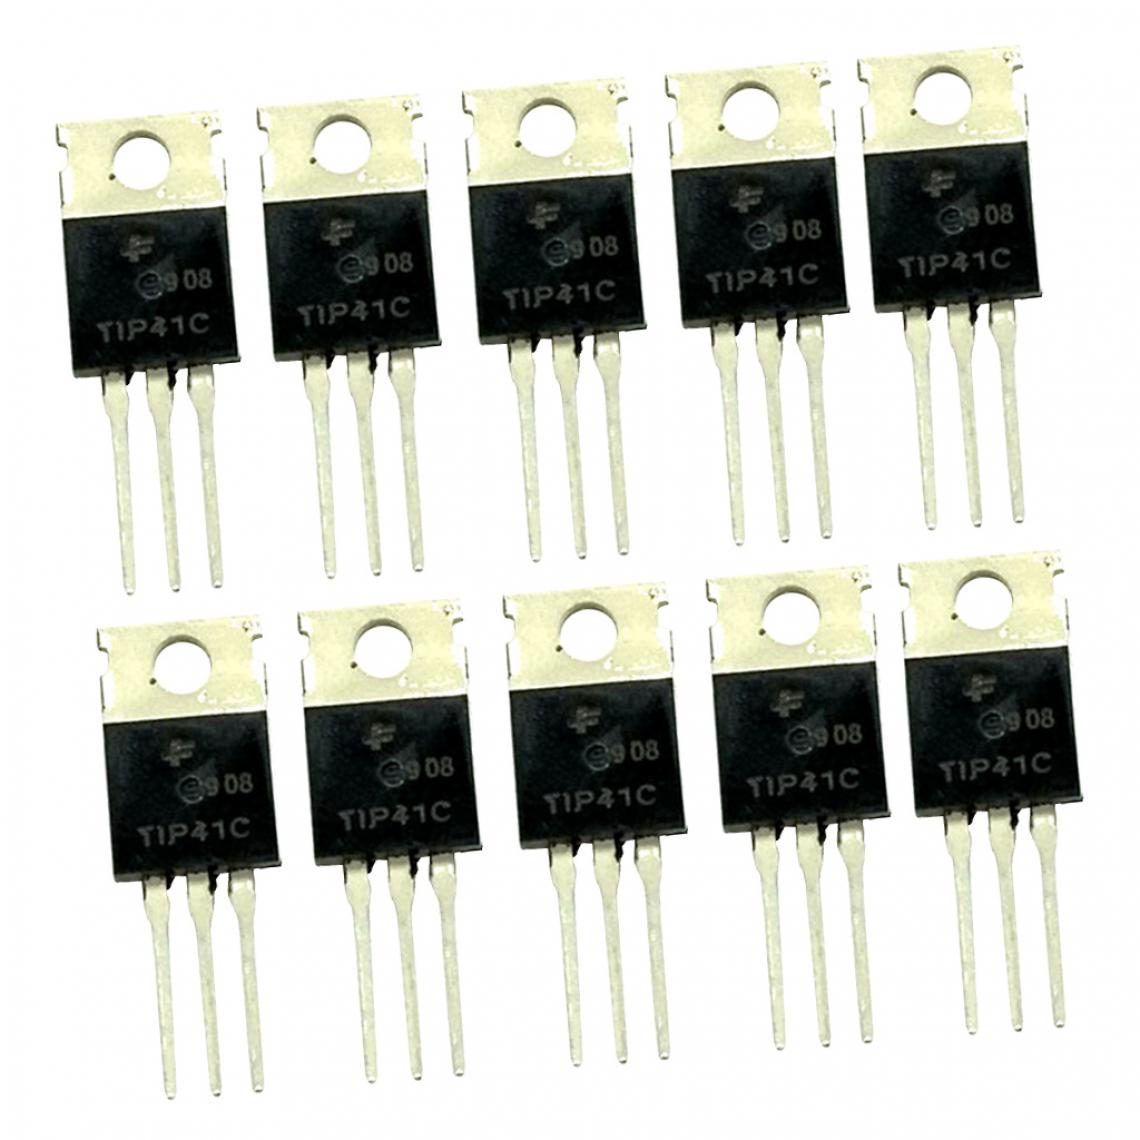 marque generique - 10 Pcs TIP41C Amplificateur De Puissance à Transistor 100V 6A NPN Triode - Appareils de mesure